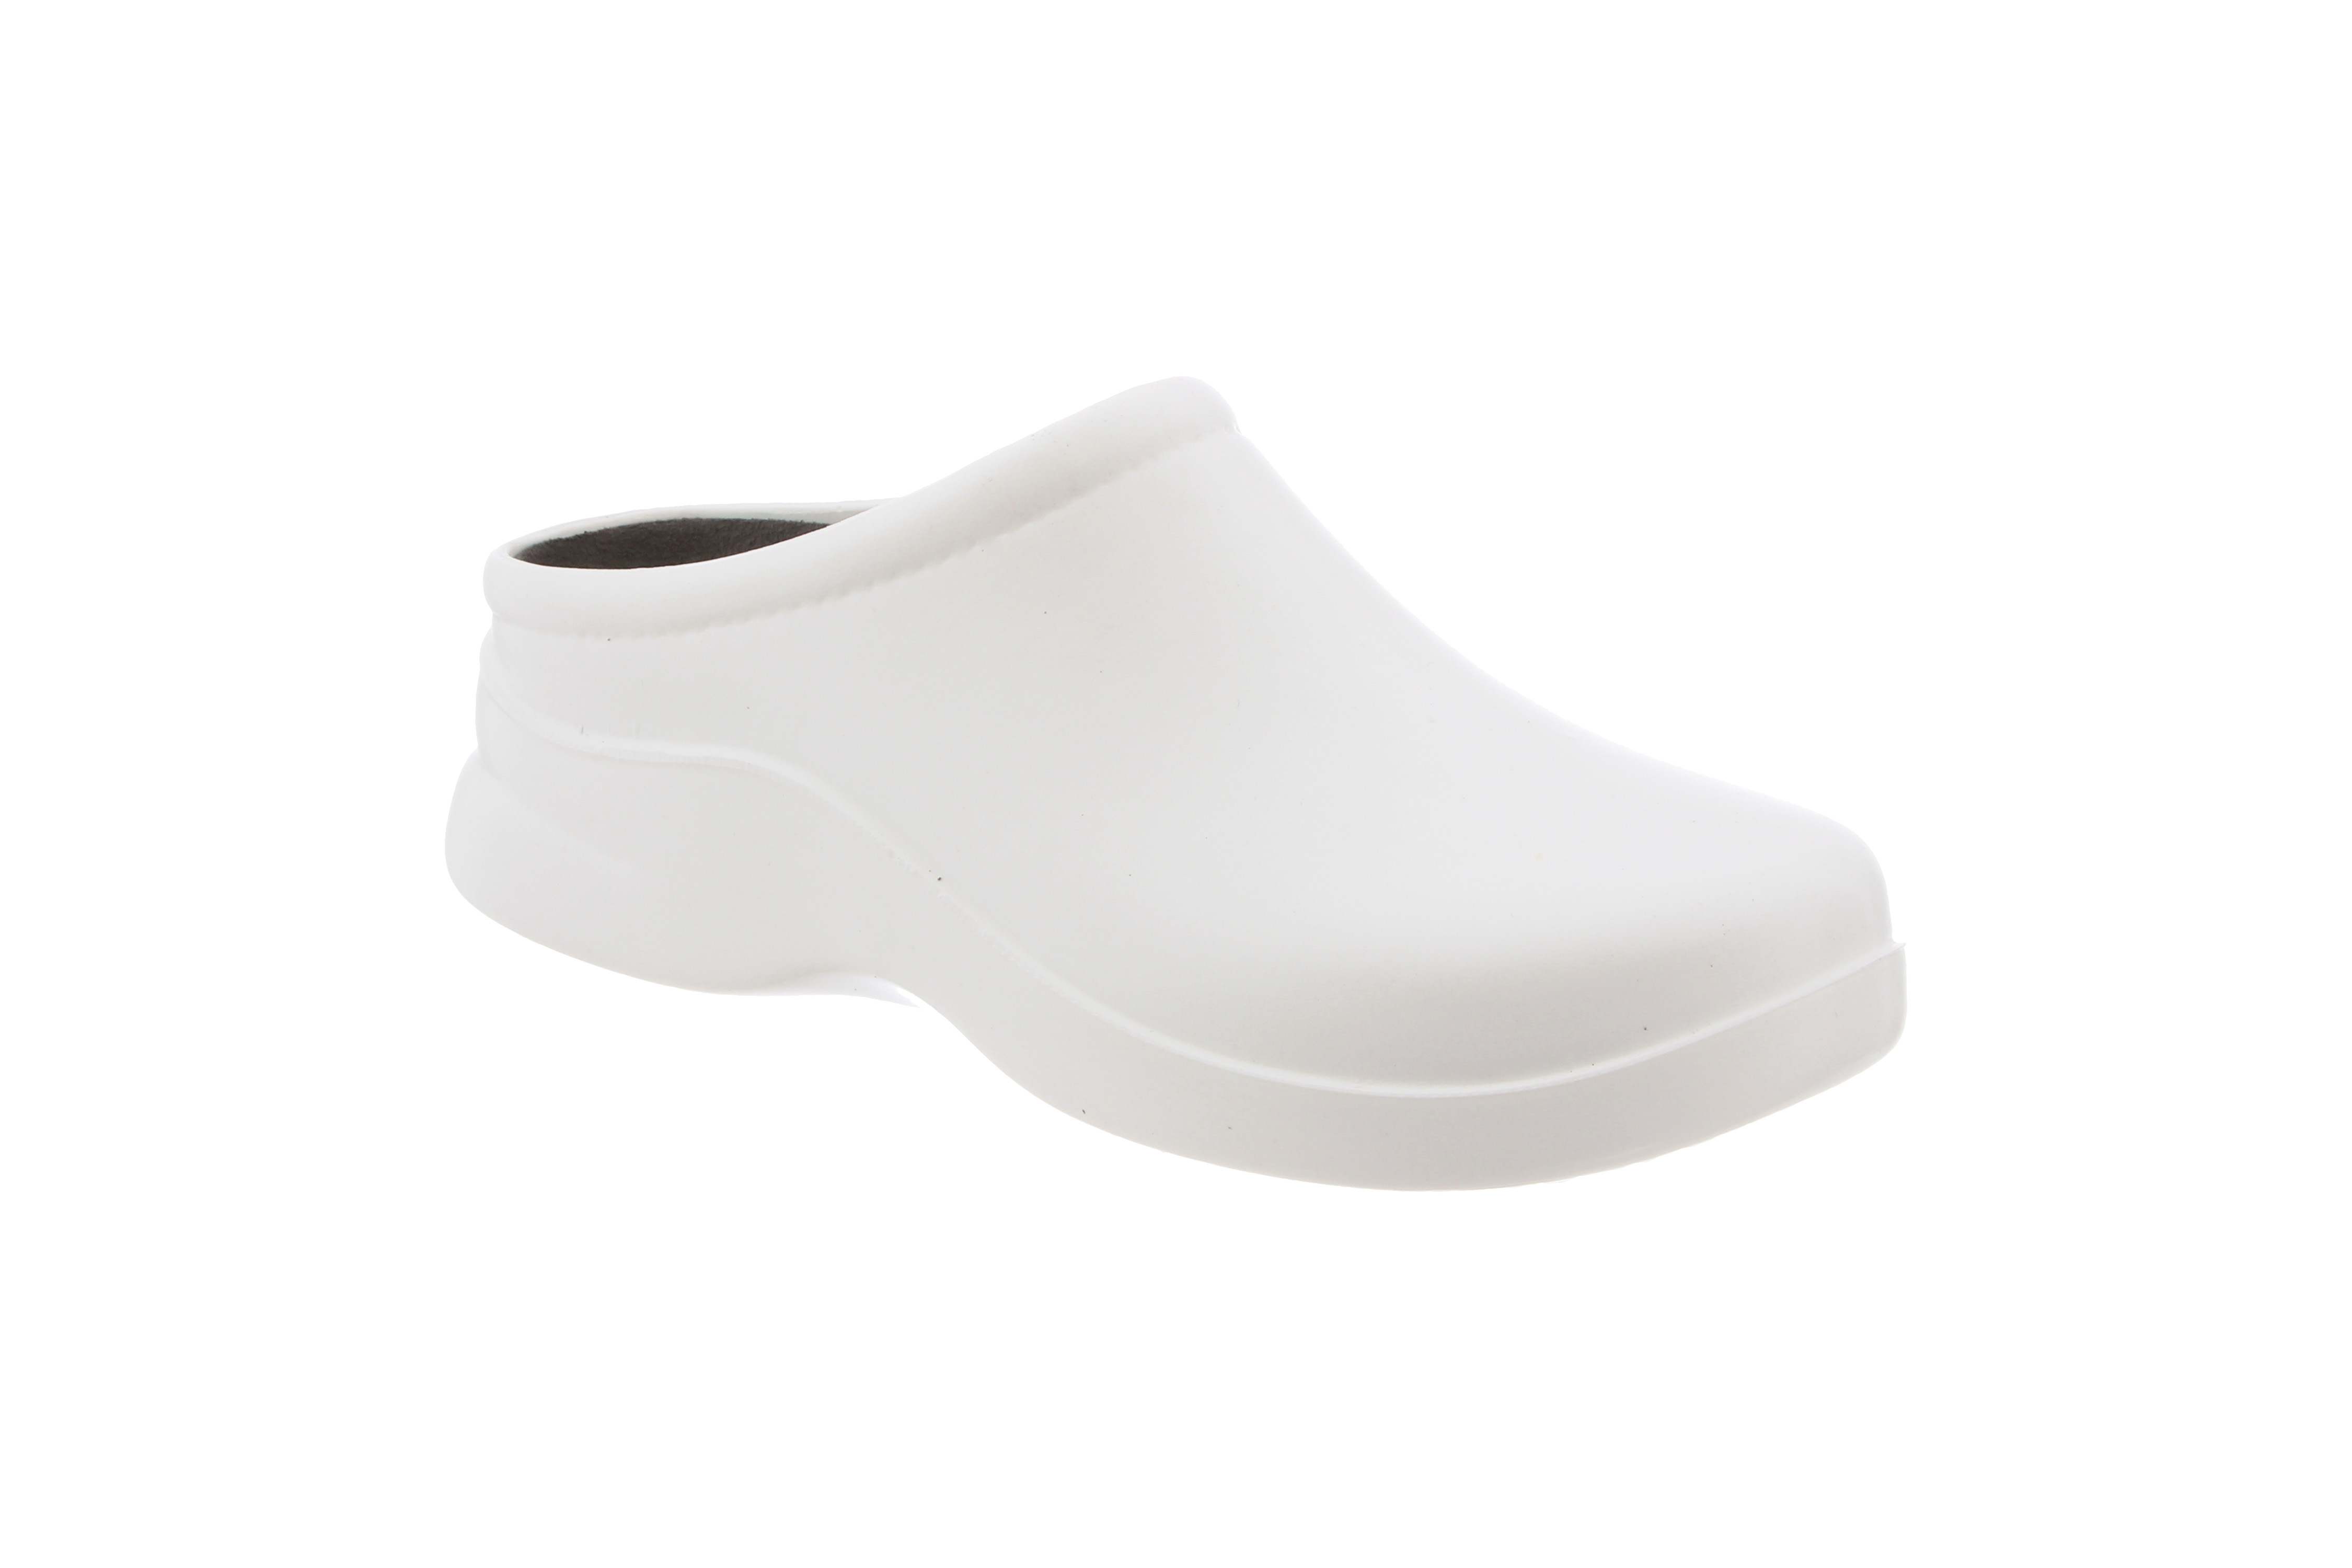 Klogs Footwear Women's Dusty White Polyurethane Open-Back Slip-Resistant Shoes